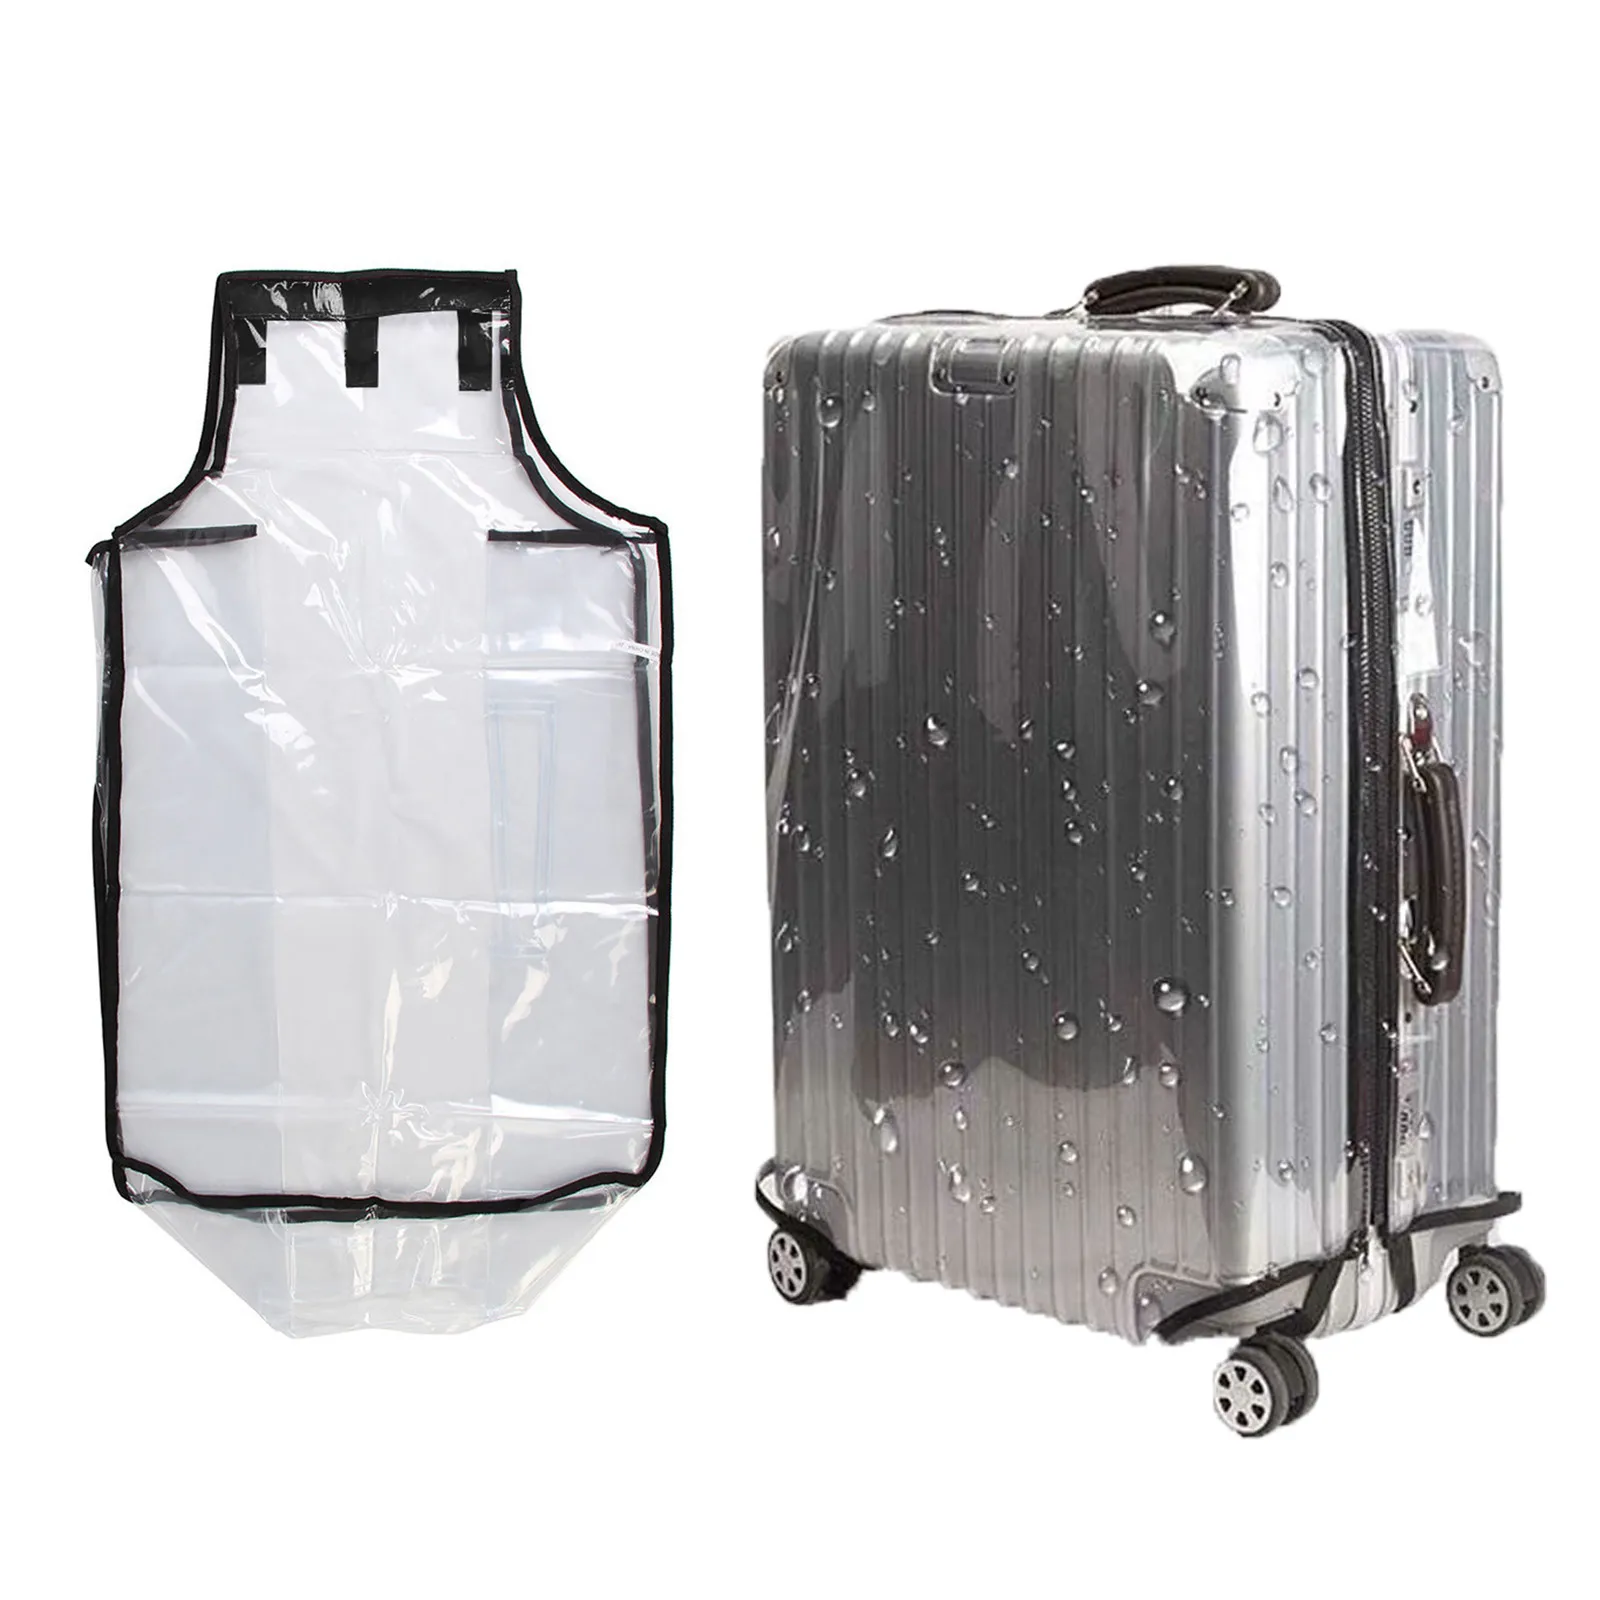 

Утолщенный прозрачный защитный чехол для багажа, водонепроницаемый чехол для чемодана на колесиках, износостойкие дорожные аксессуары из ПВХ